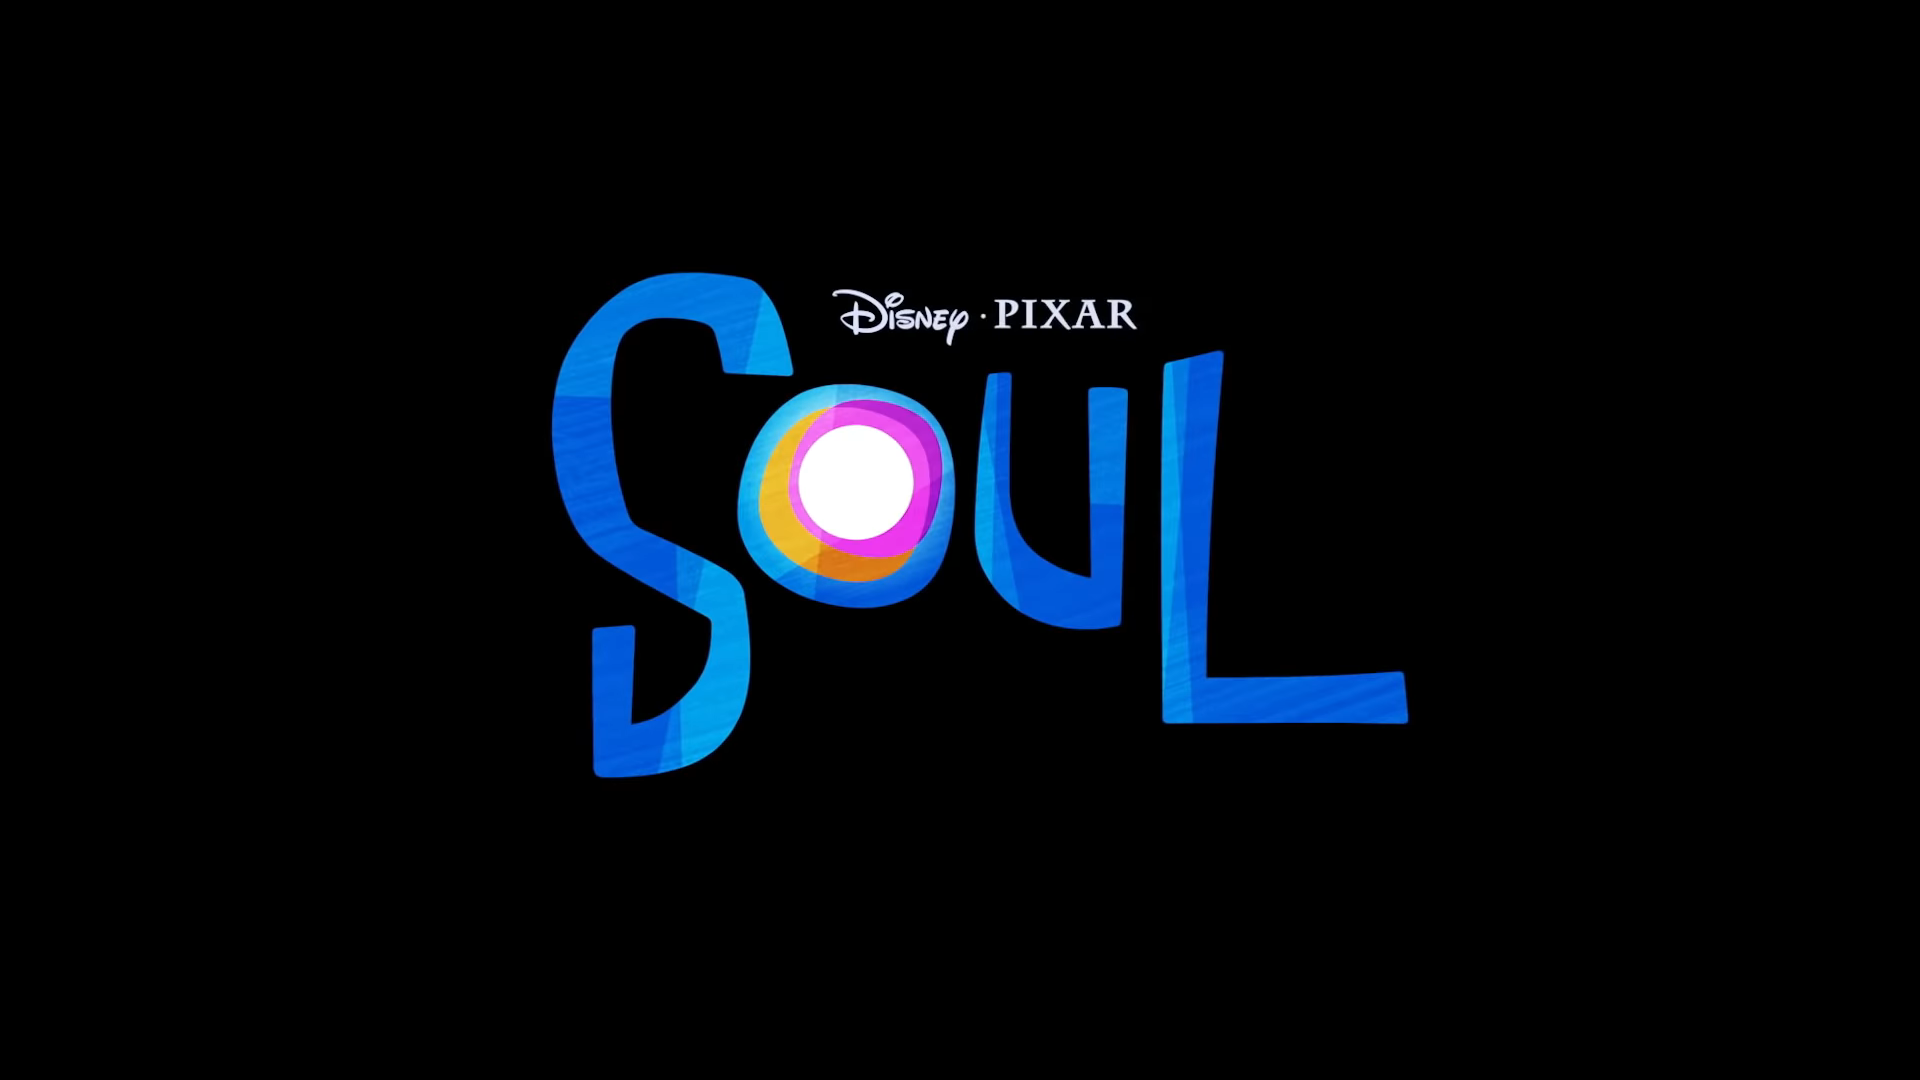 Trailer hoạt hình “Soul” của Pixar sẽ đem đến cái nhìn dễ thương về kiếp sau của một đời người